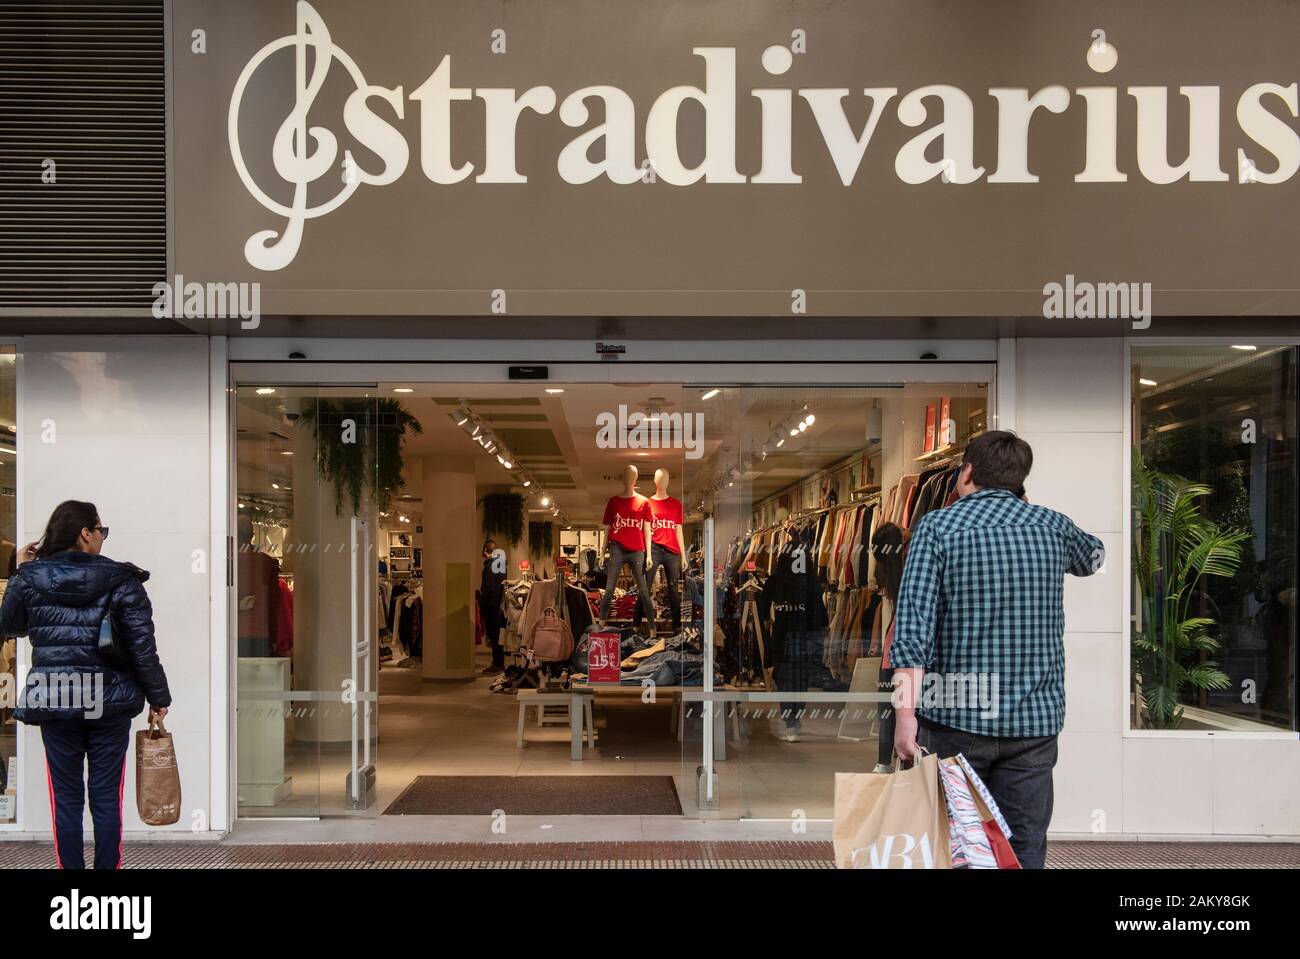 La marque de mode de vêtements de femmes espagnoles de l'Espagne  appartenant au groupe Inditex, Stradivarius, store vu en Espagne Photo  Stock - Alamy